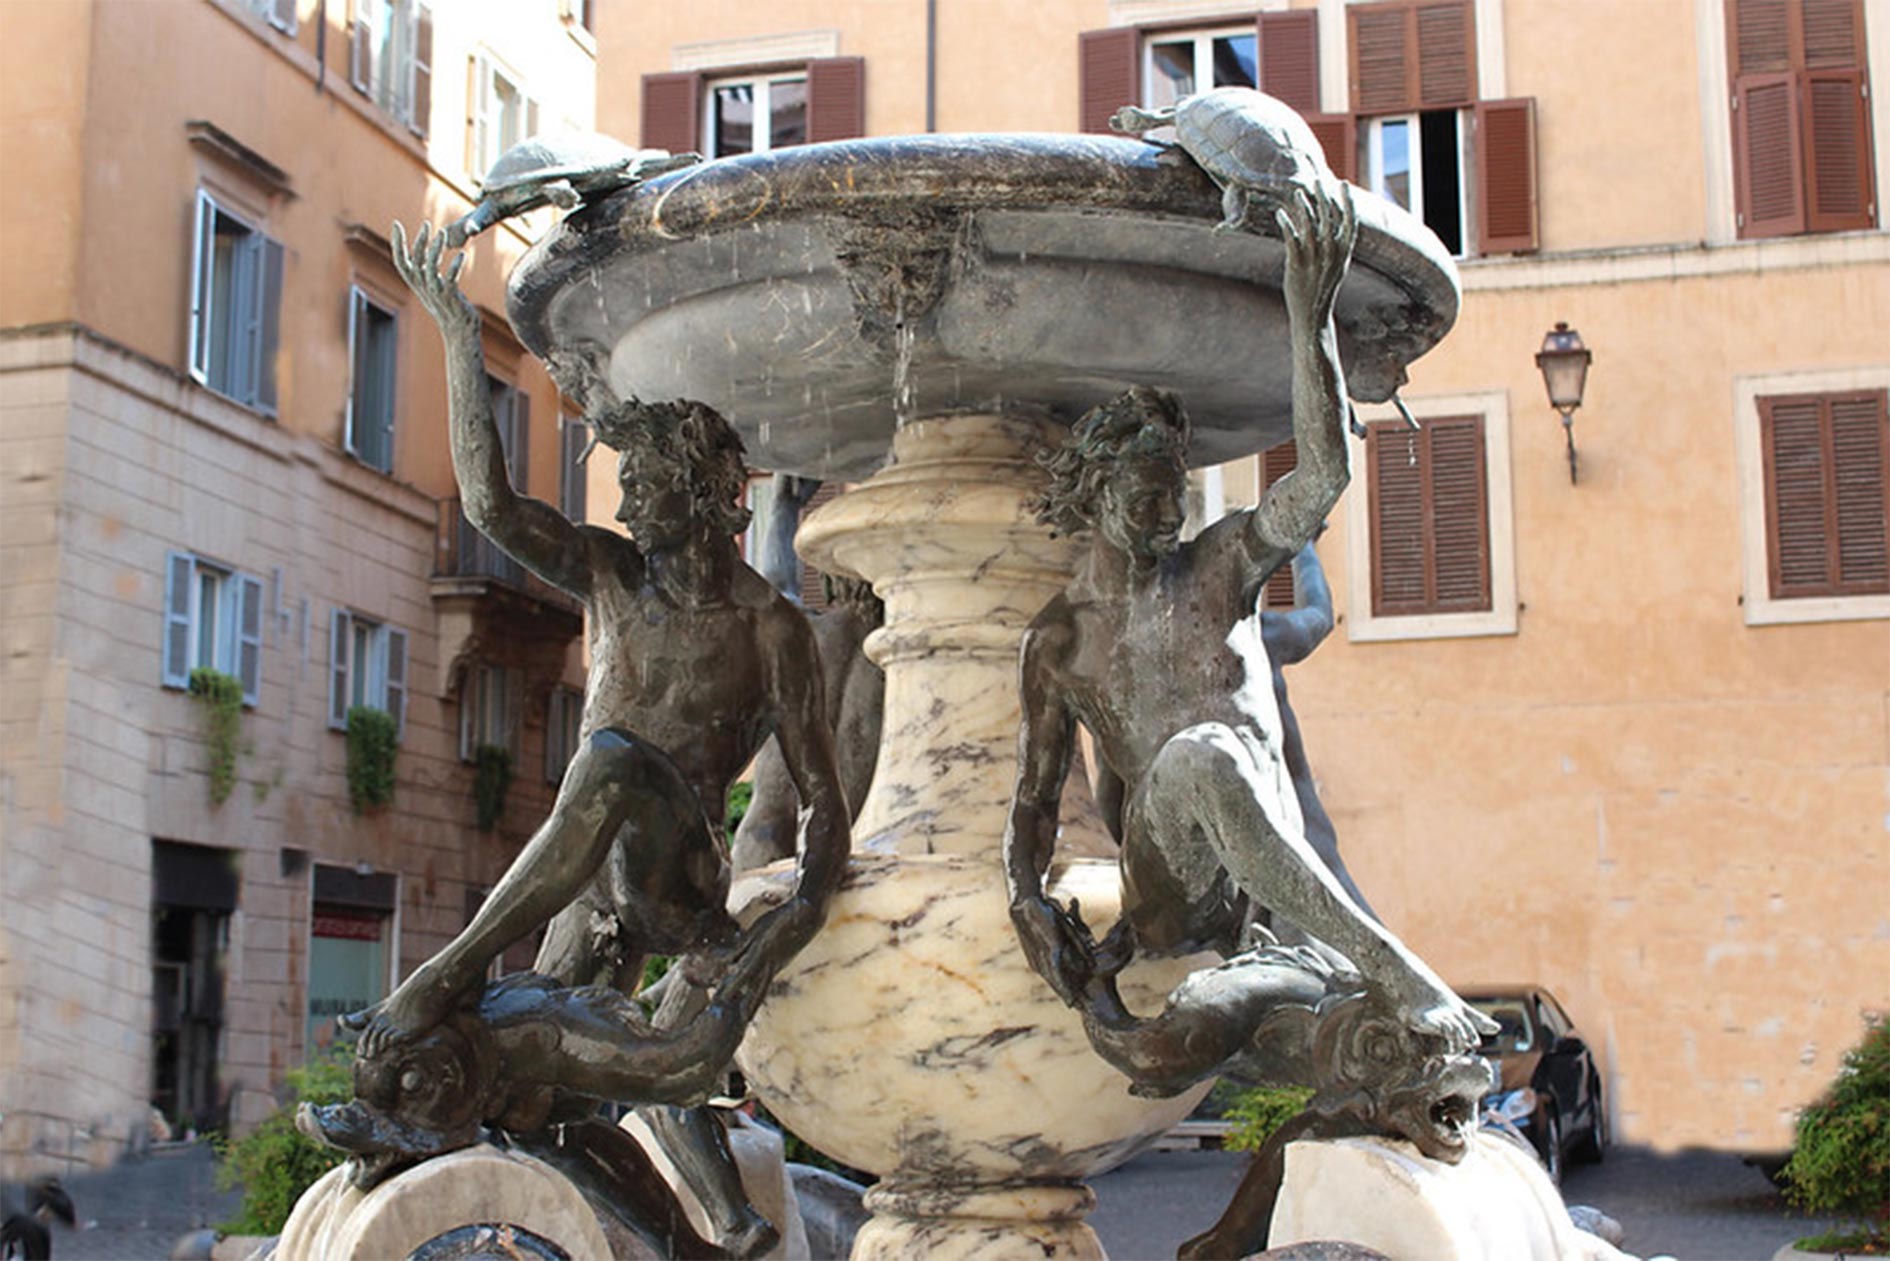 The Turtle Fountain (Fontana delle Tartarughe)